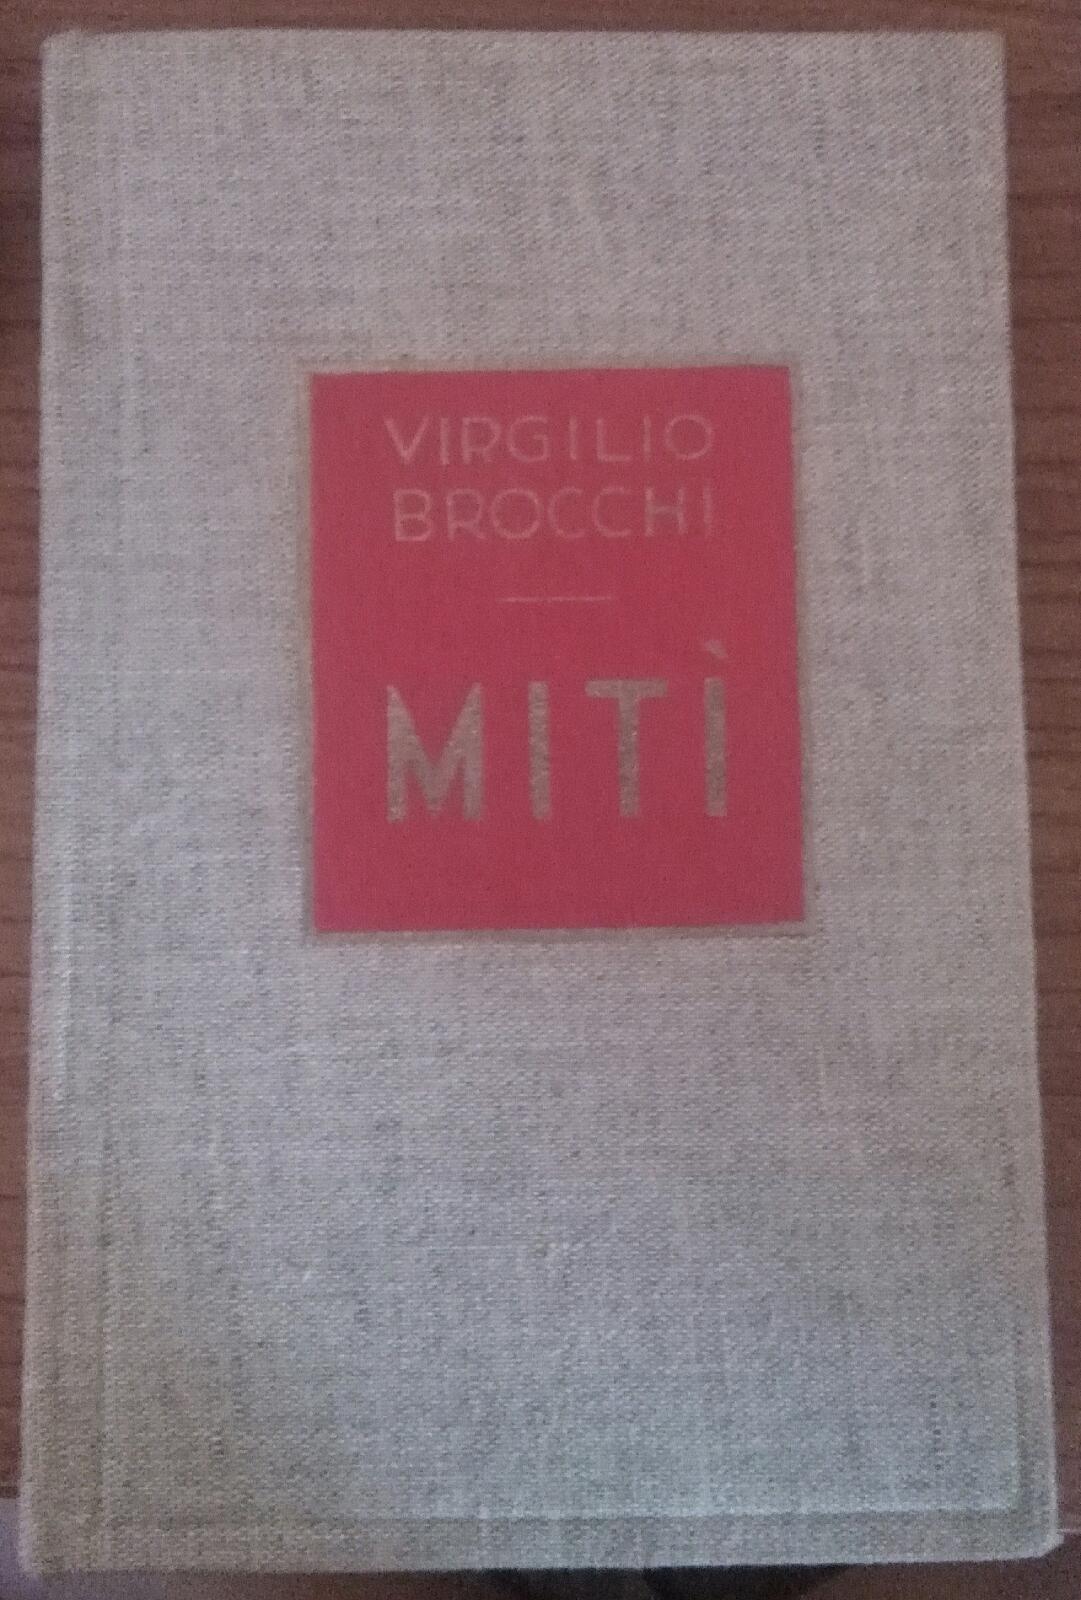 Mit? - Virgilio Brocchi , 1927 , Fratelli Treves  - S